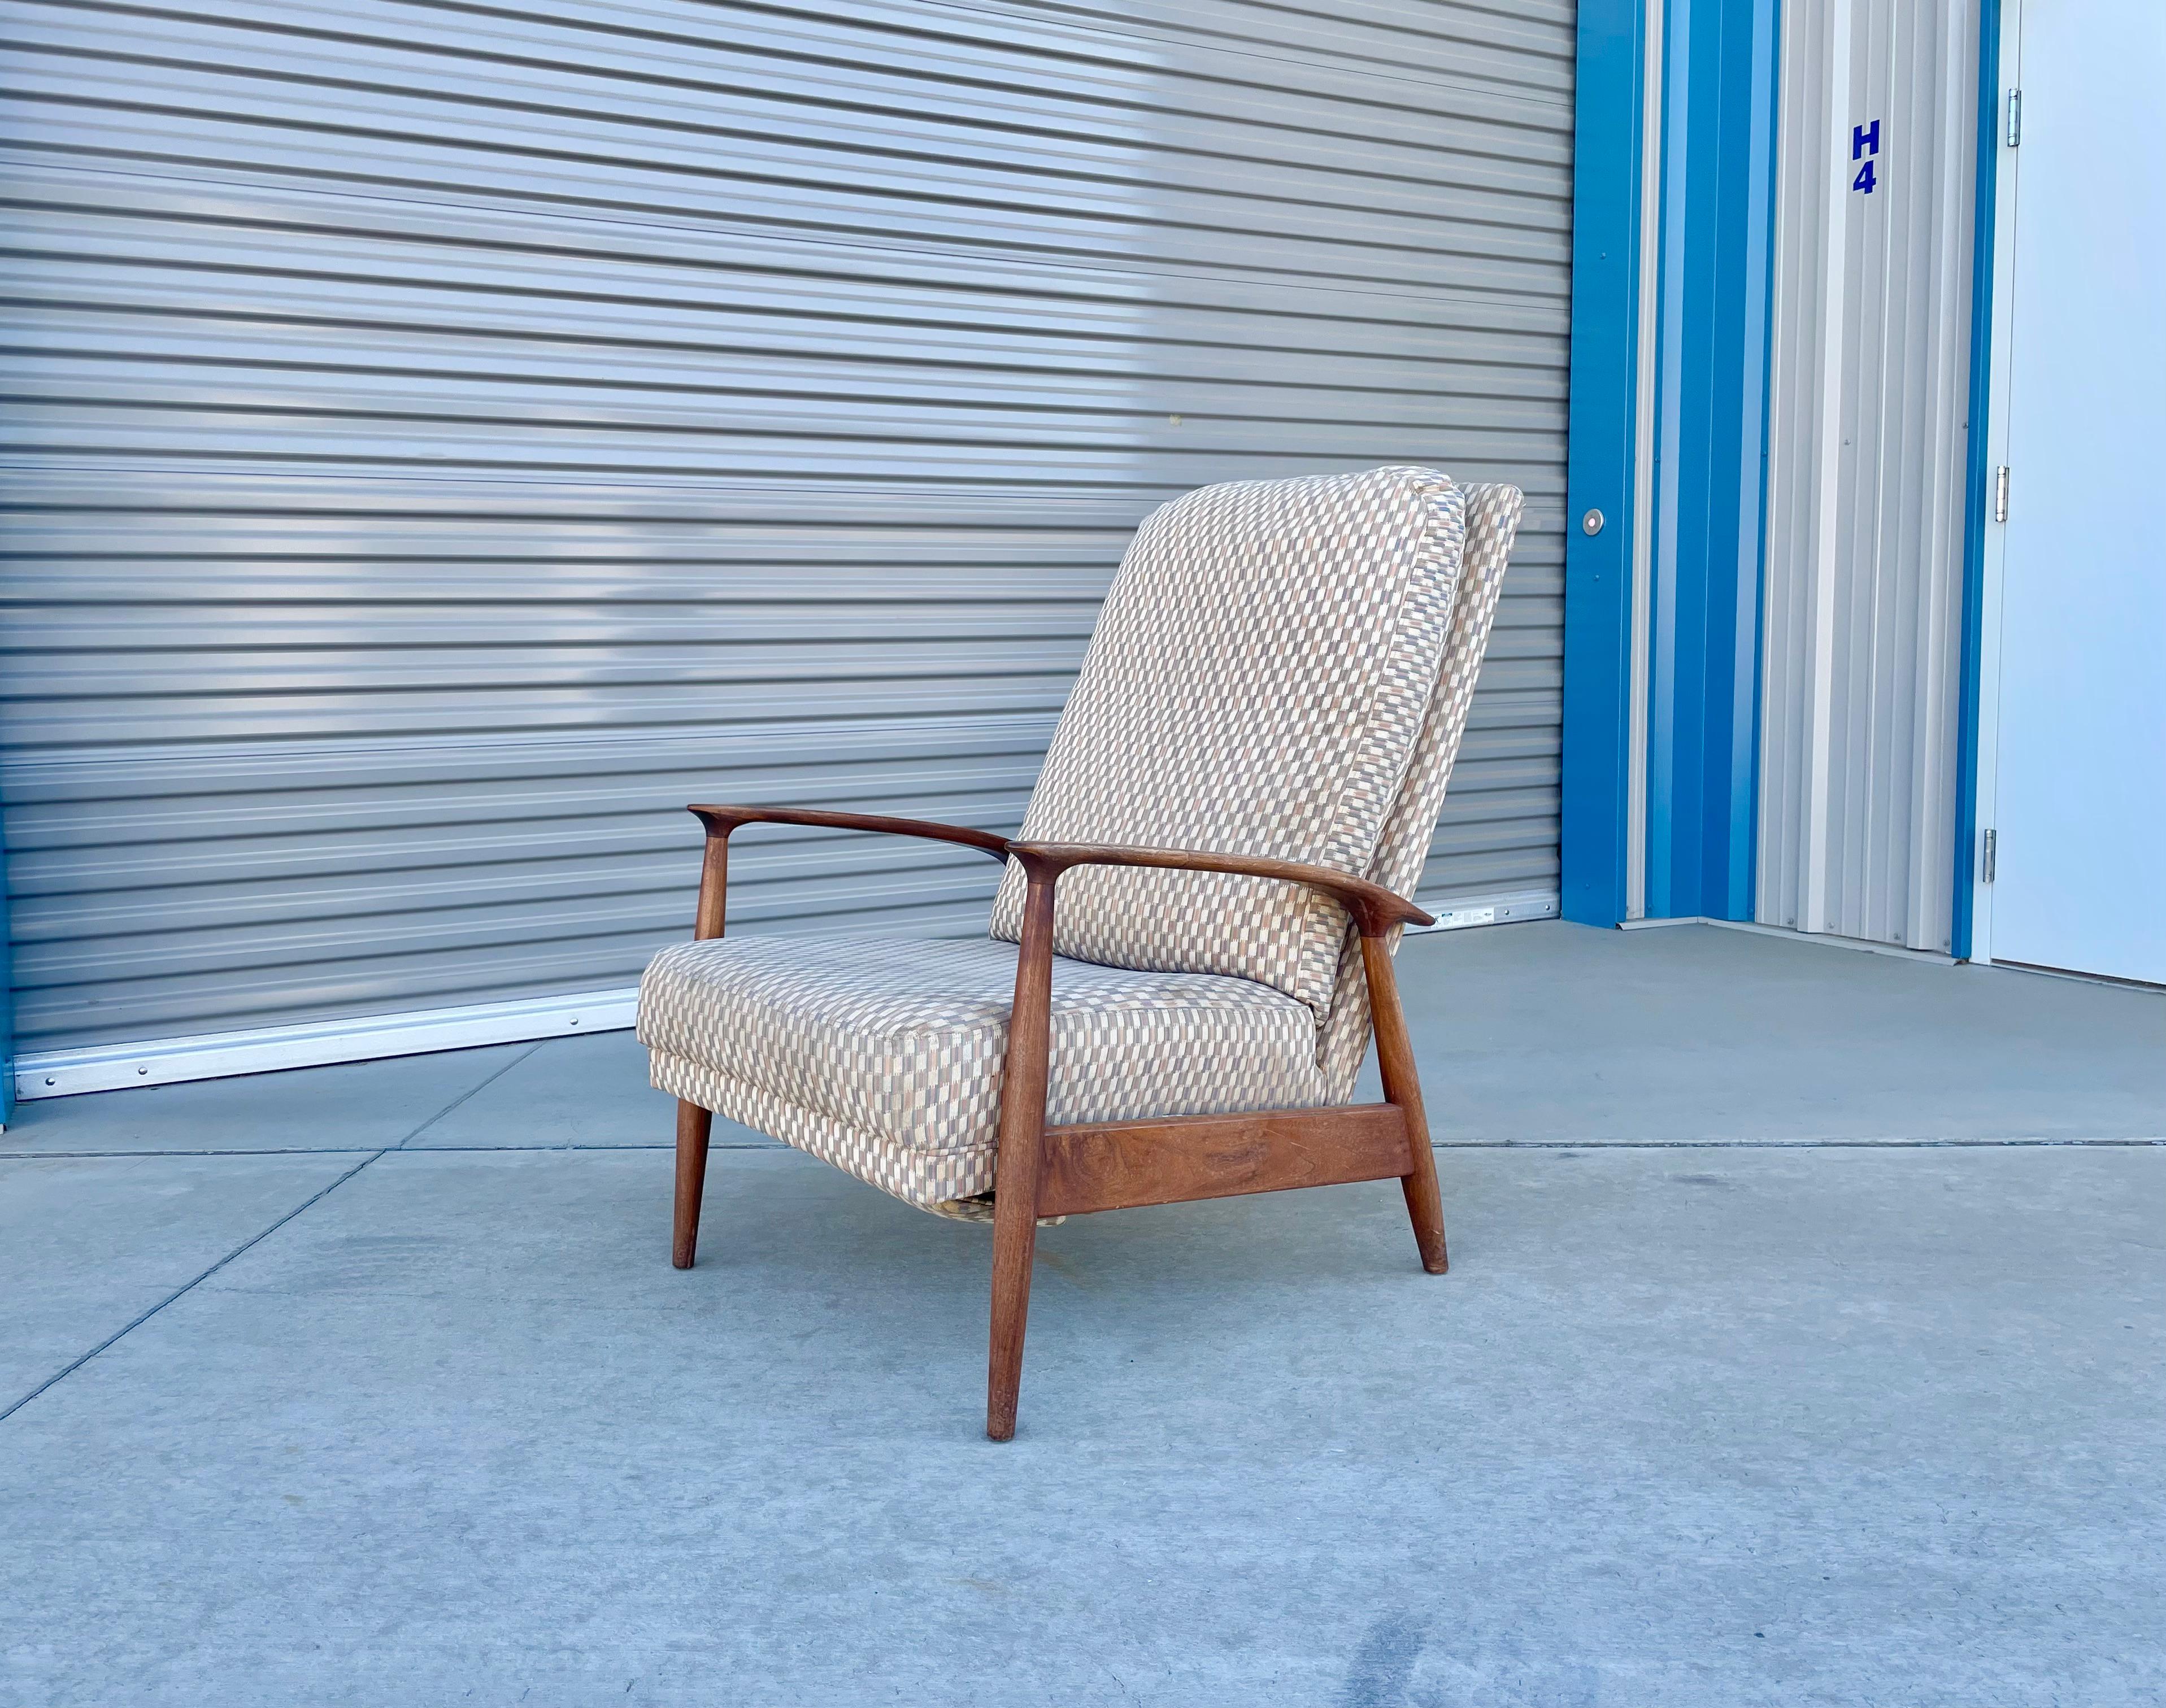 Ce magnifique fauteuil inclinable du milieu du siècle a été conçu par Milo Baughman et fabriqué par Thayer Coggin aux États-Unis dans les années 1950. Ce fauteuil inclinable est doté d'un cadre solide en noyer massif qui donne un excellent ton de